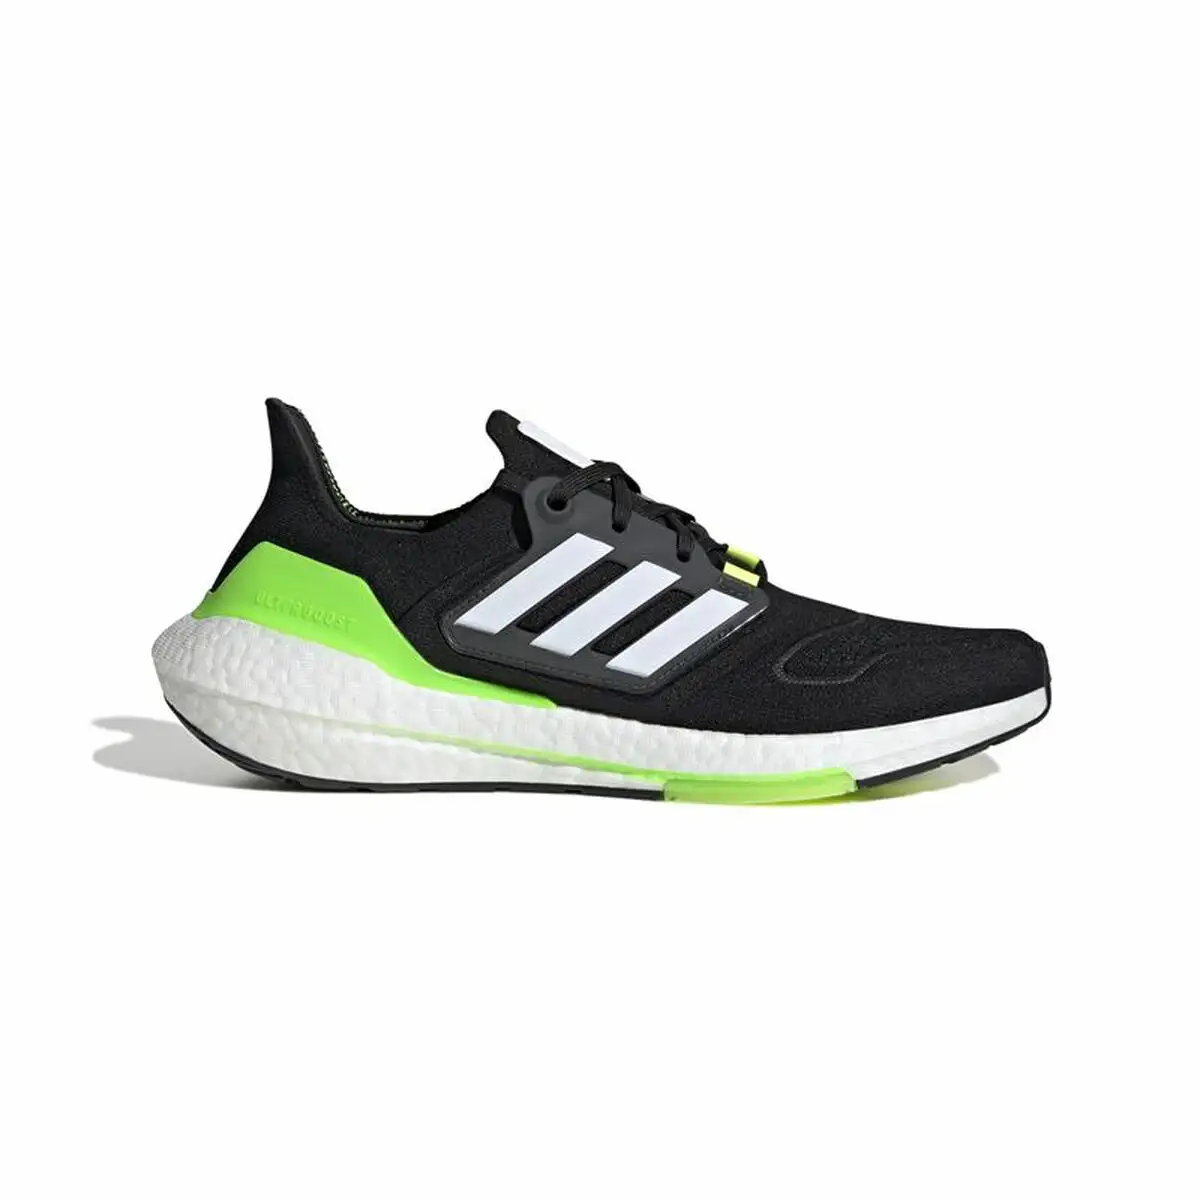 Chaussures de running pour adultes adidas ultraboost 22 noir homme_1442. Entrez dans DIAYTAR SENEGAL - Où Chaque Détail Compte. Explorez notre boutique en ligne pour trouver des produits de haute qualité, soigneusement choisis pour répondre à vos besoins et vos désirs.